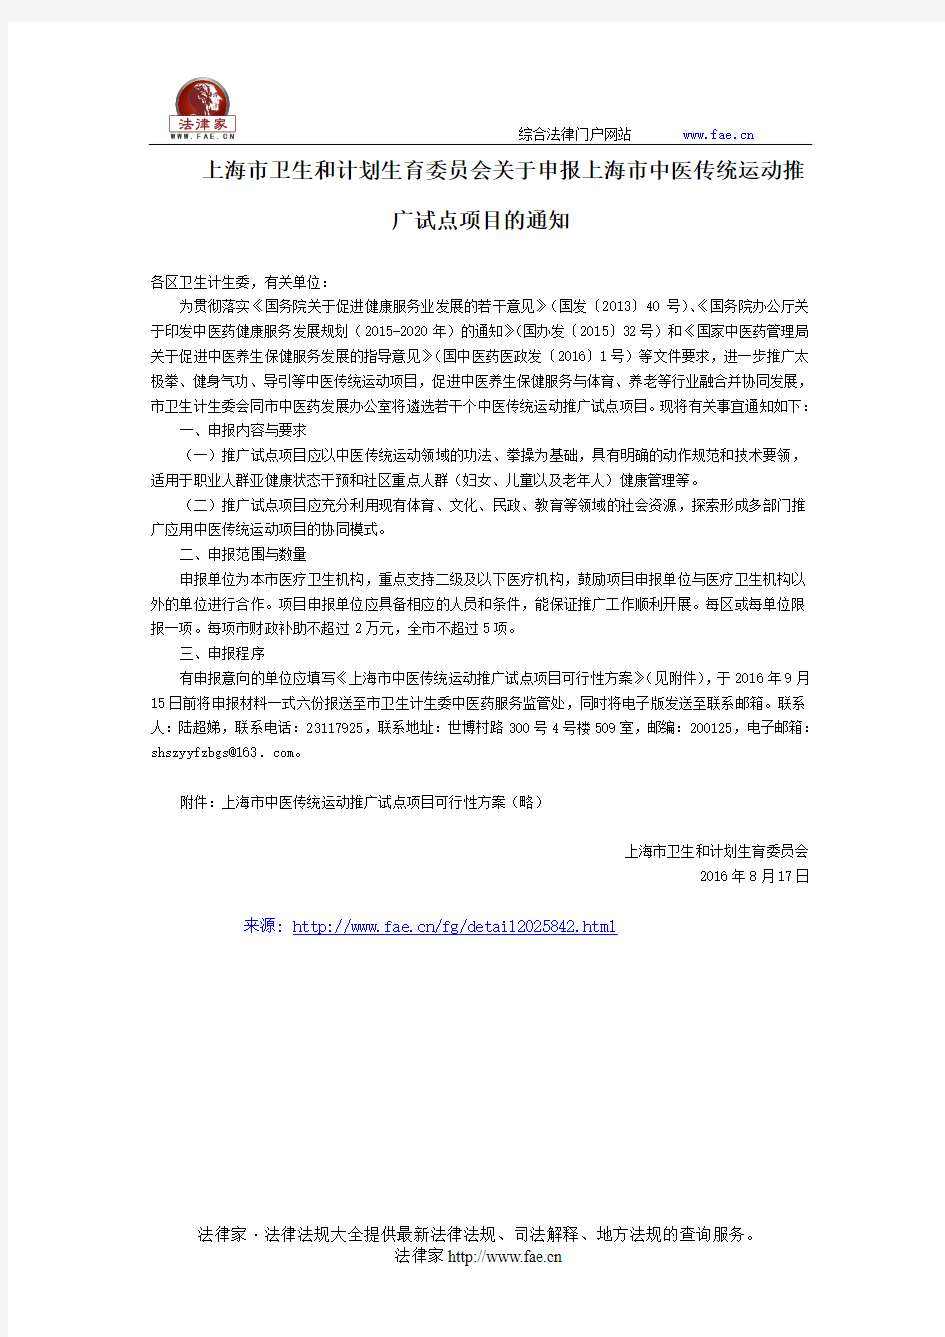 上海市卫生和计划生育委员会关于申报上海市中医传统运动推广试点项目的通知-地方规范性文件